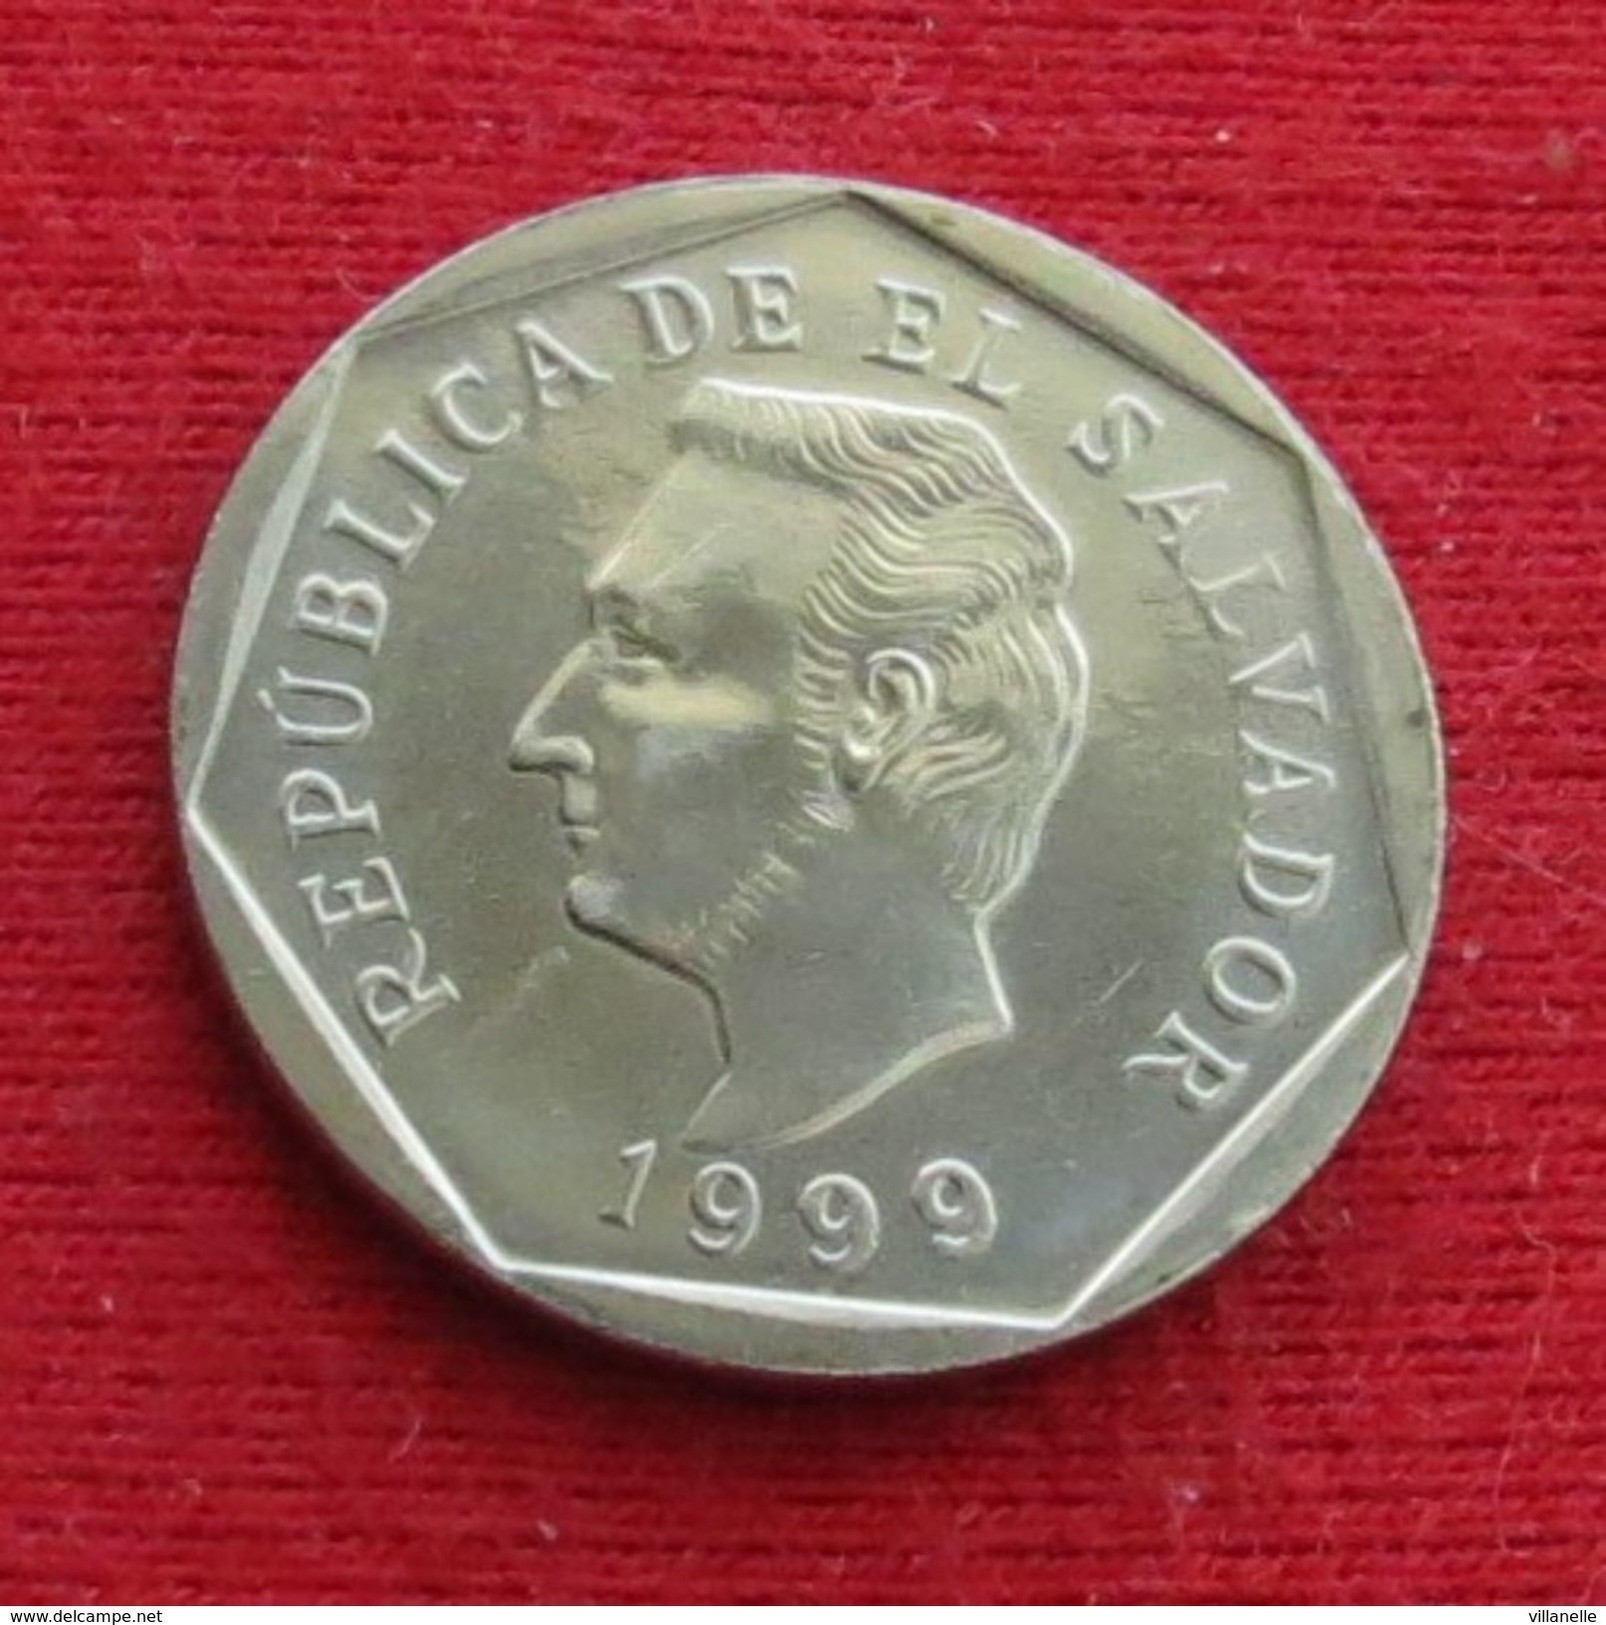 El Salvador 10 Centavos 1999 UNC ºº - Salvador